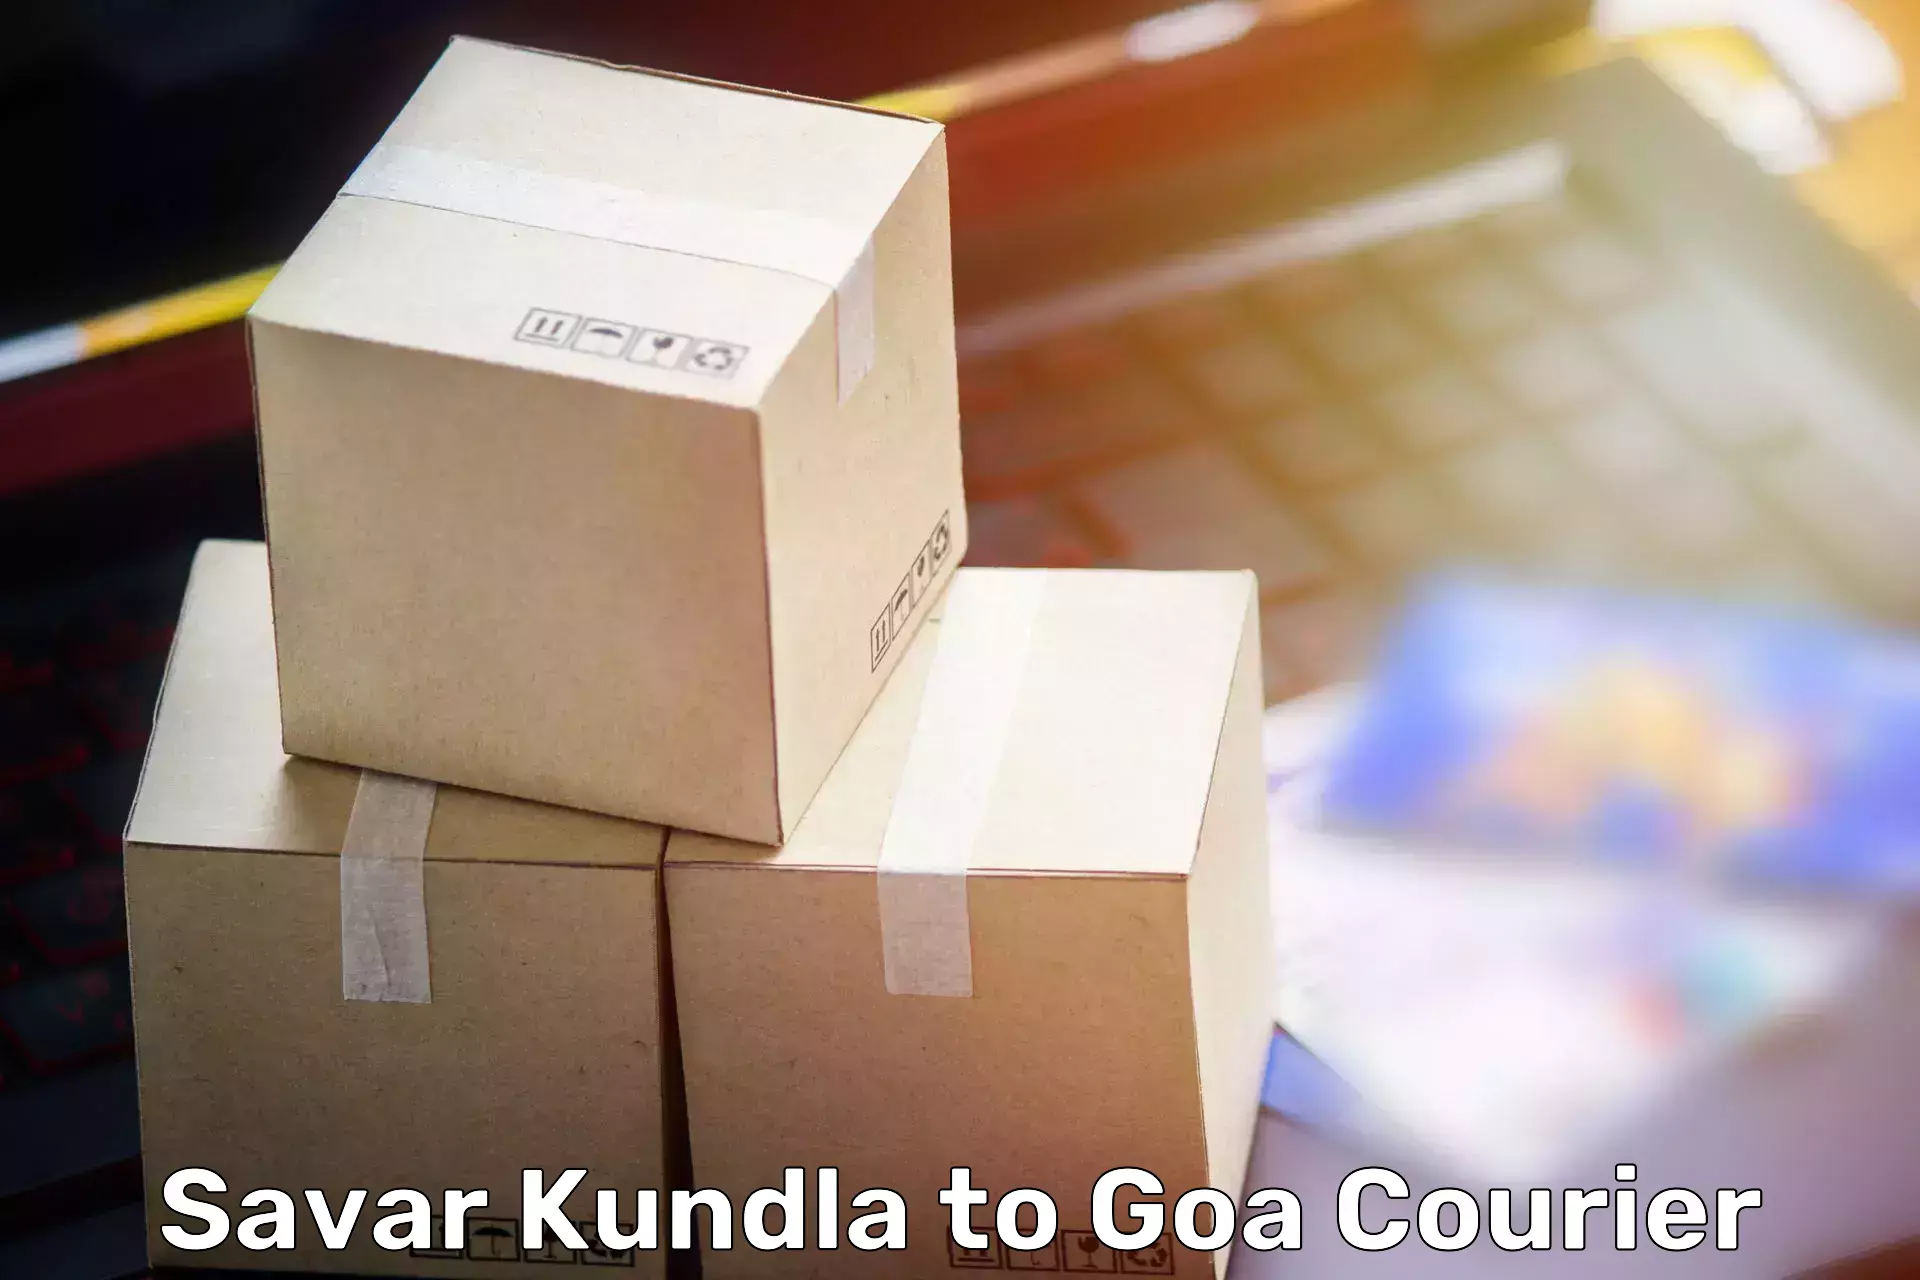 Safe household movers Savar Kundla to Panaji